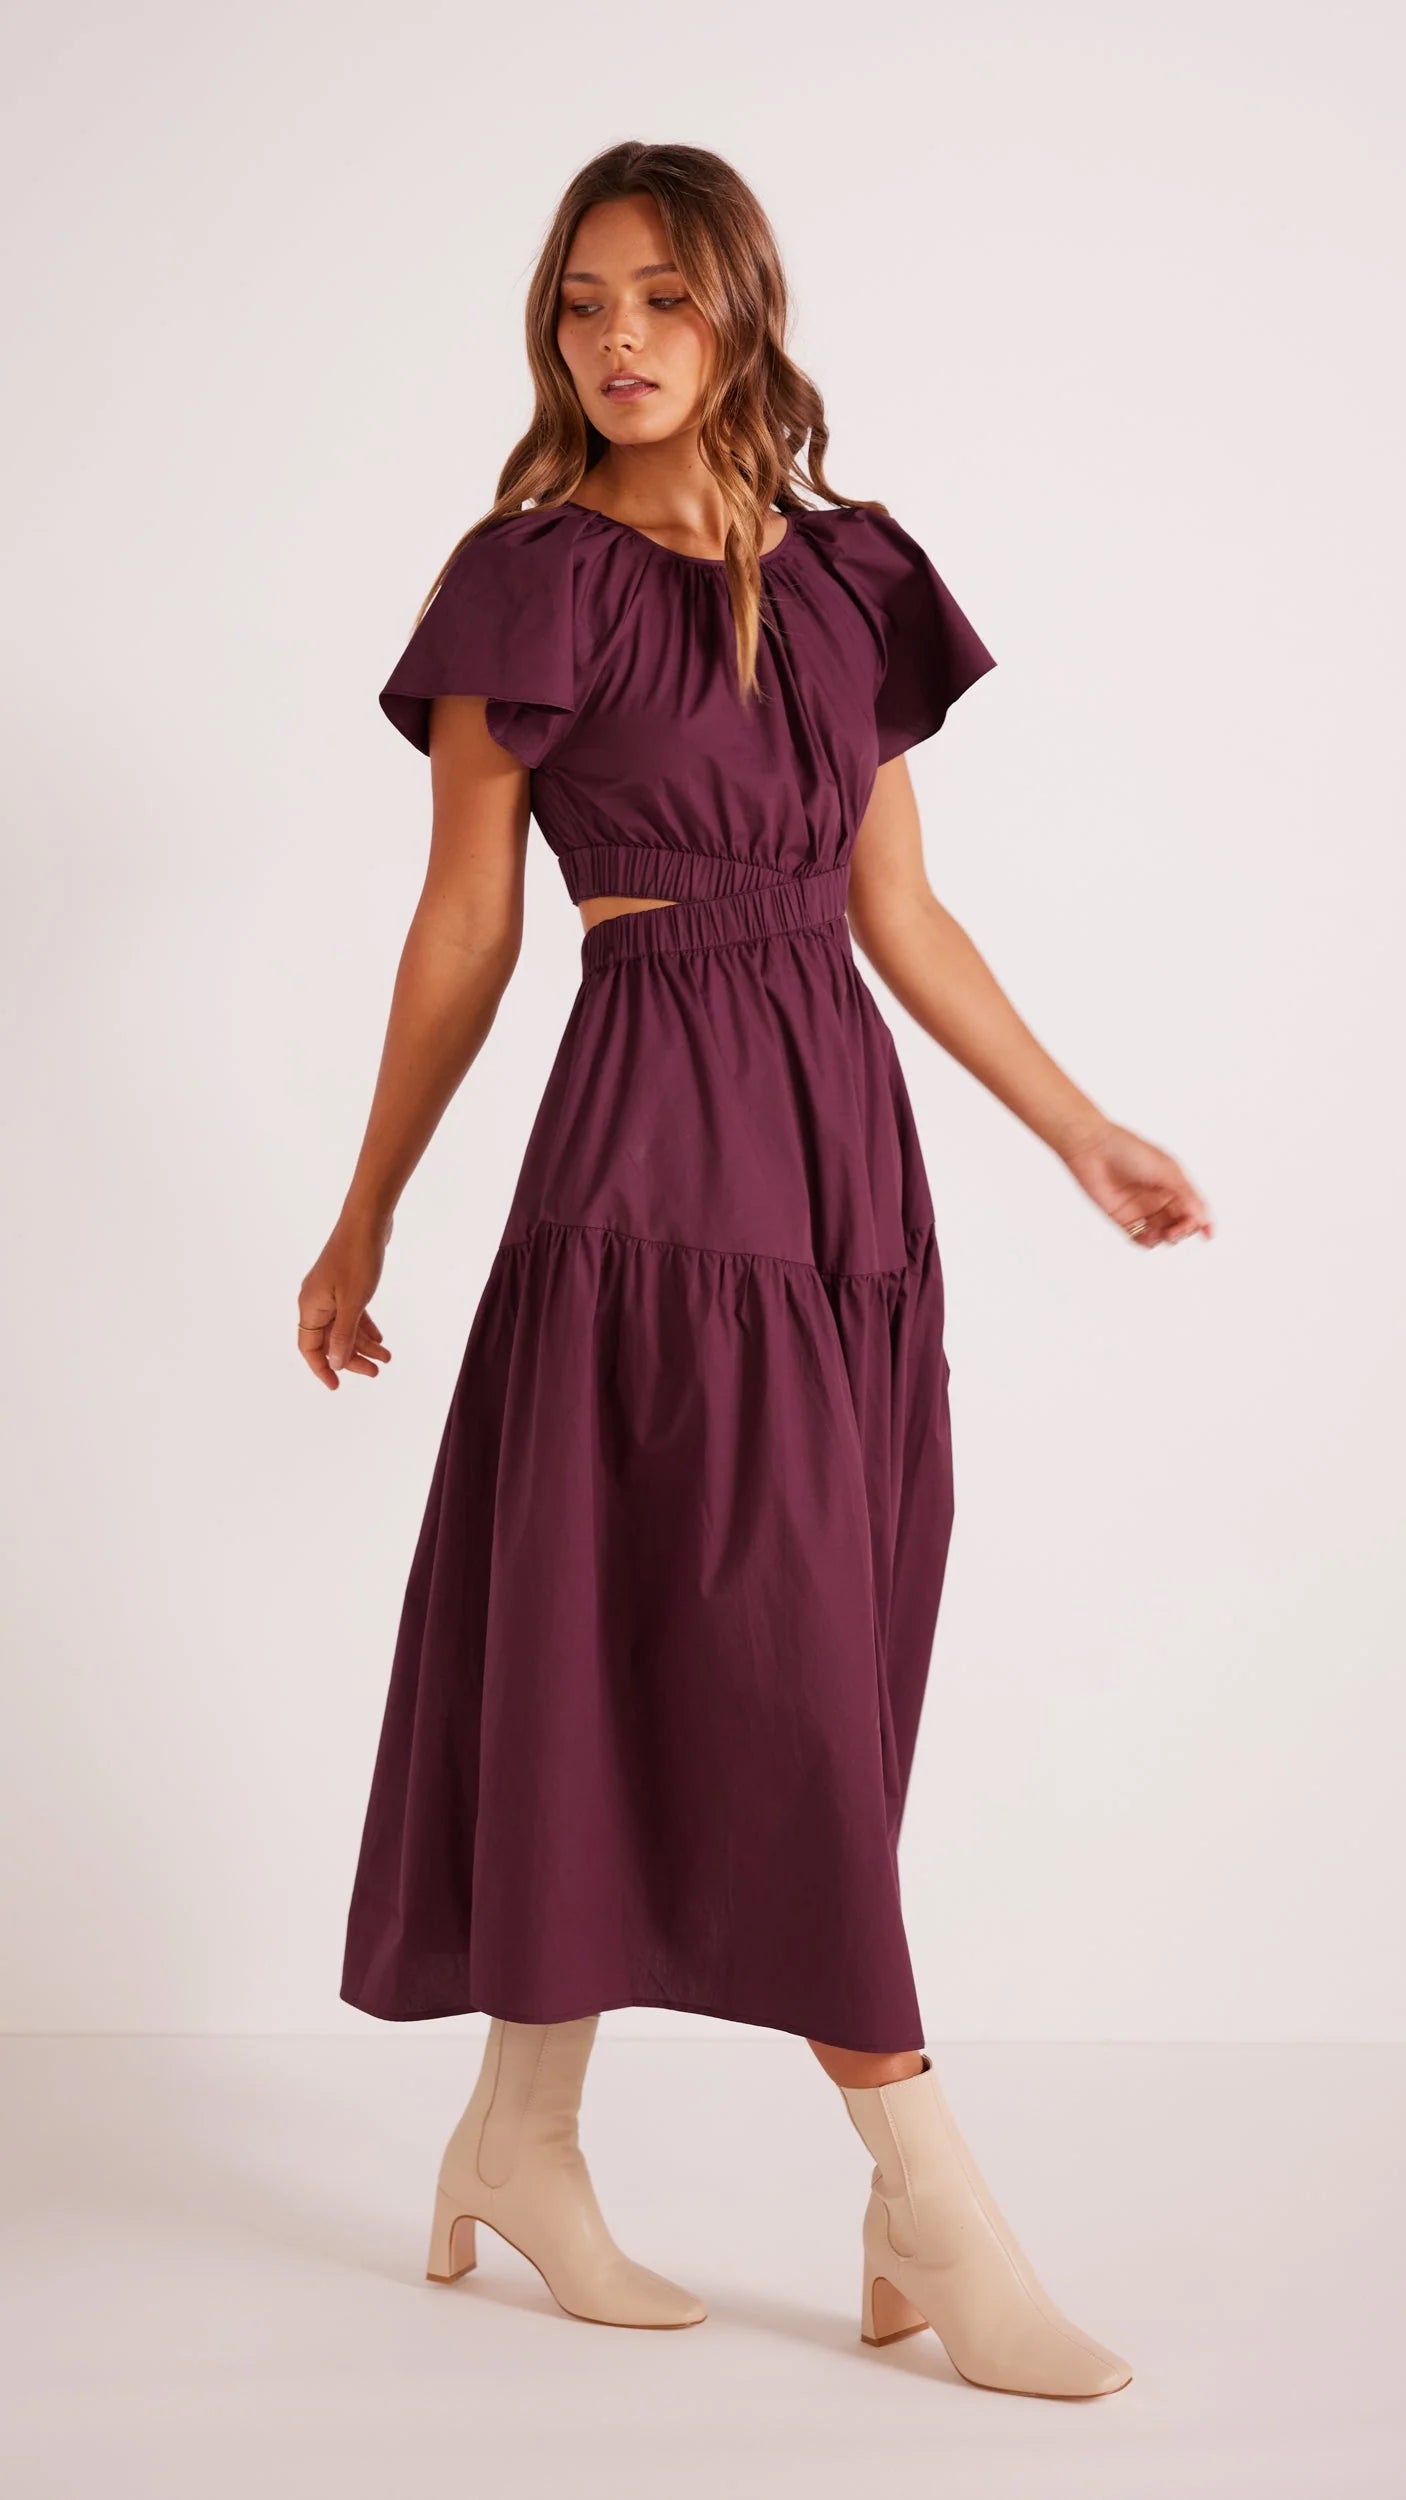 Allegra Cut Out Midi Dress - Purple